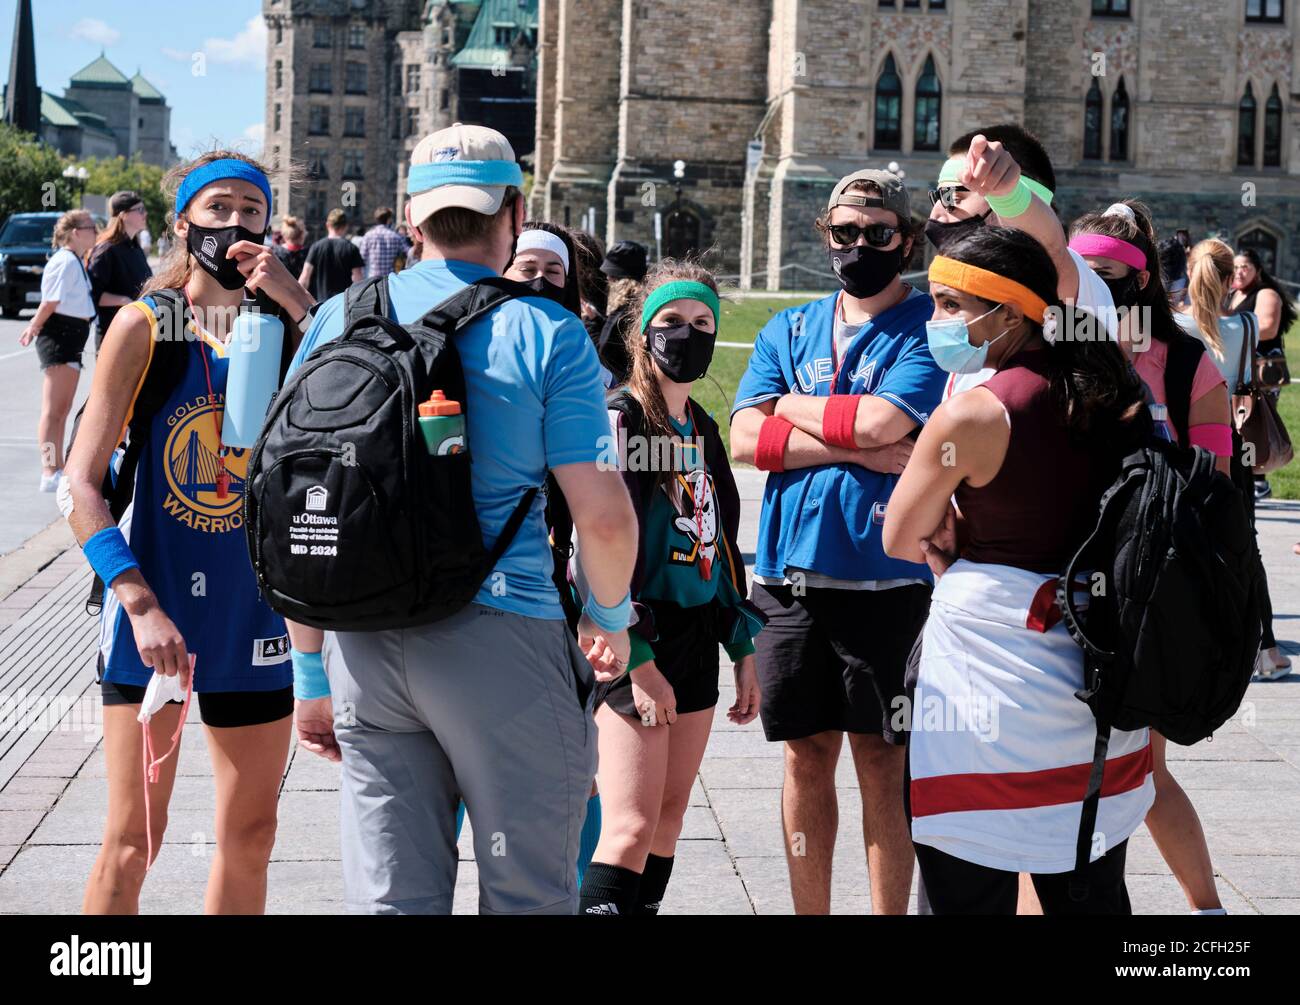 Les étudiants de l'Université d'Ottawa participent à une course d'aventure autour de la capitale au début du nouvel an. Participants aux tenues de diverses équipes sportives Banque D'Images